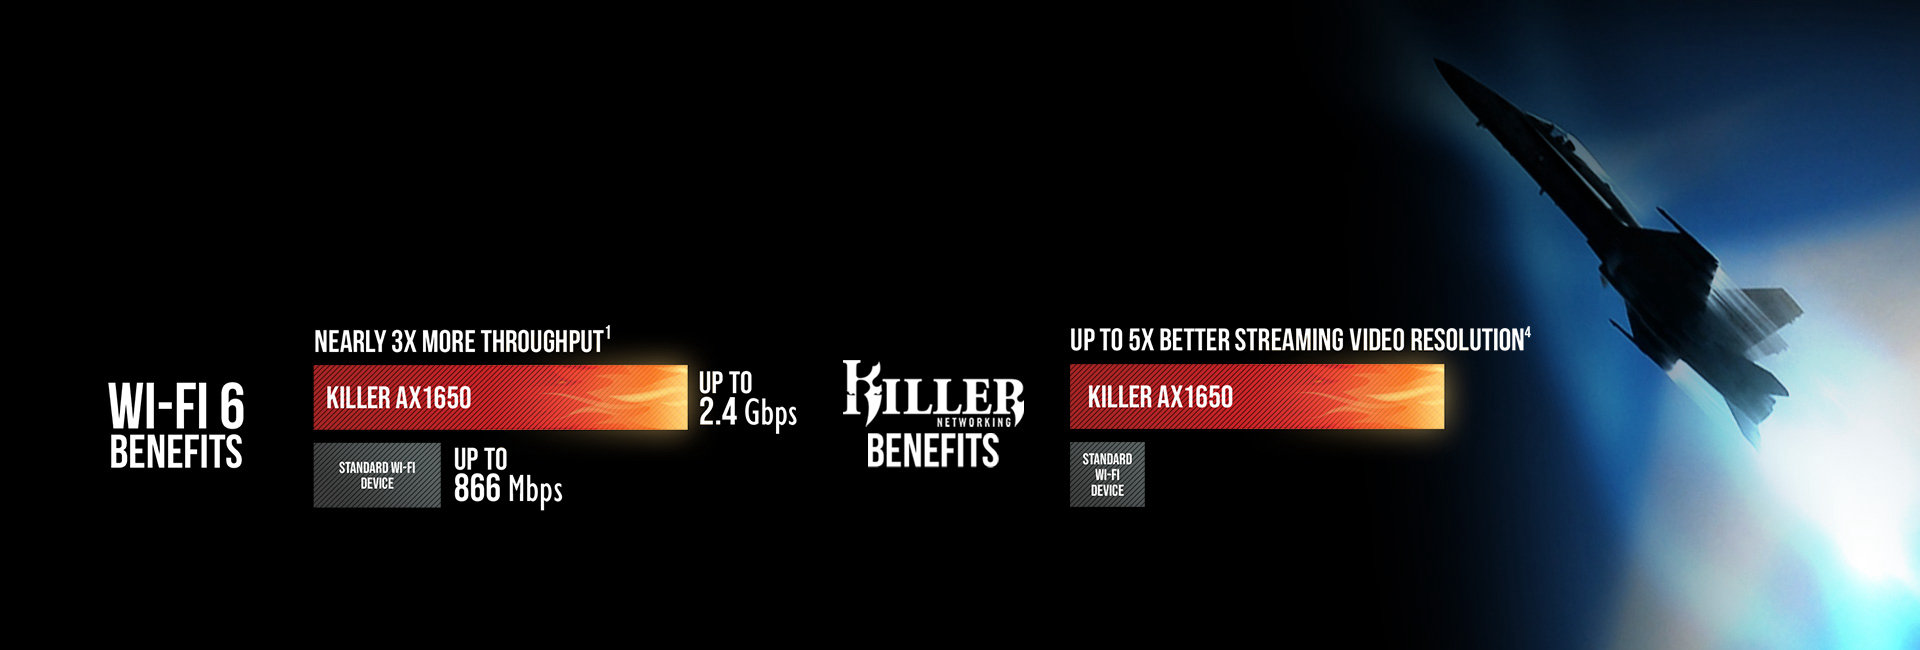 Killer AX1650